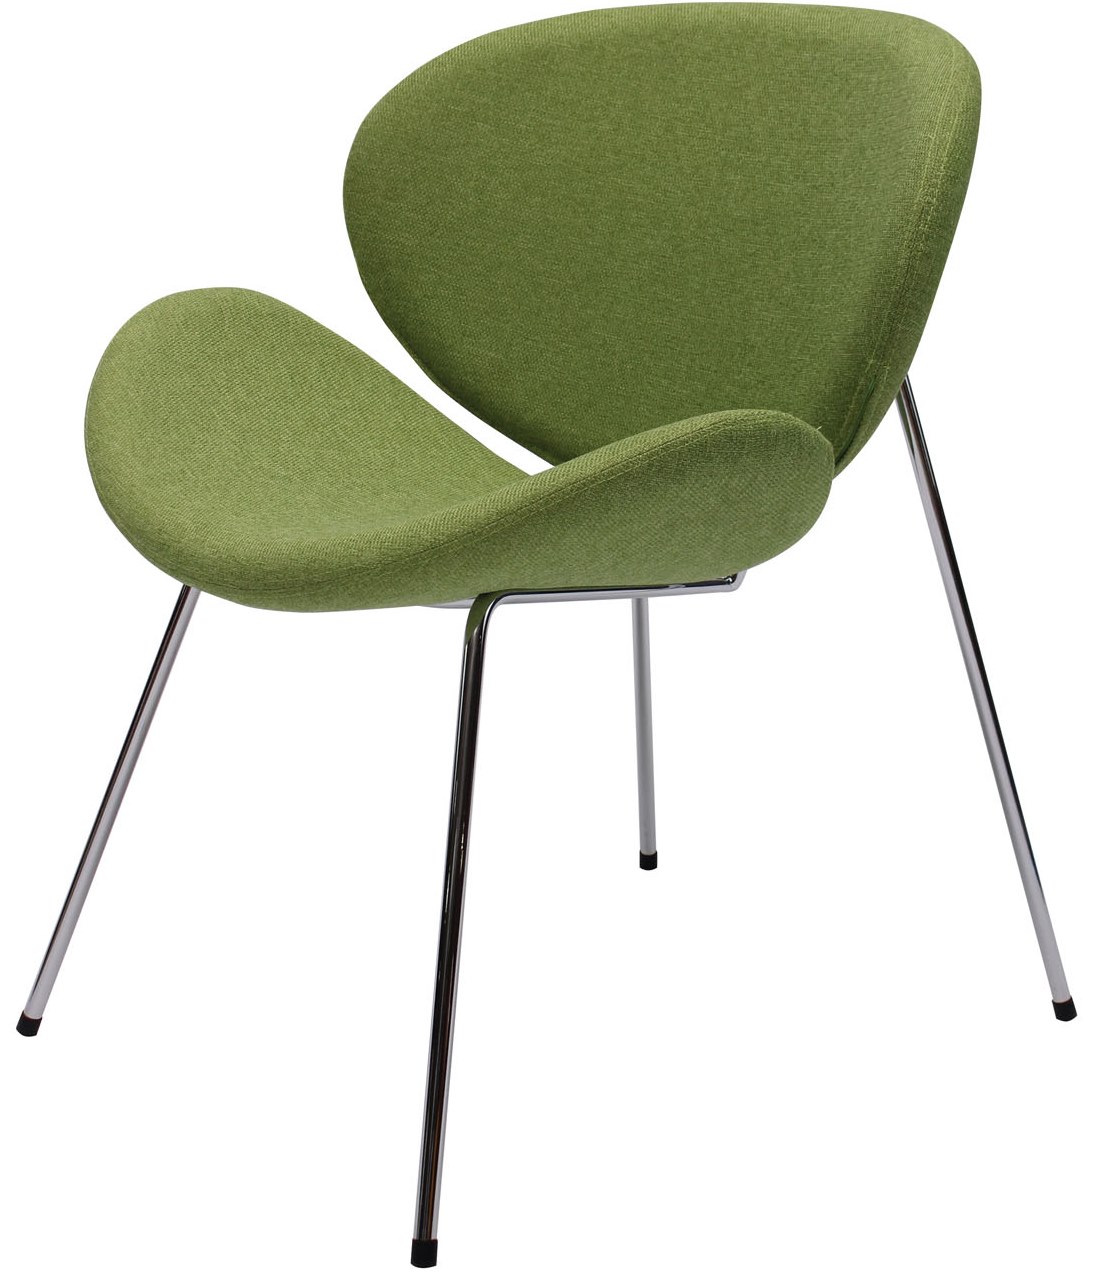 белый стул с зеленой обивкой